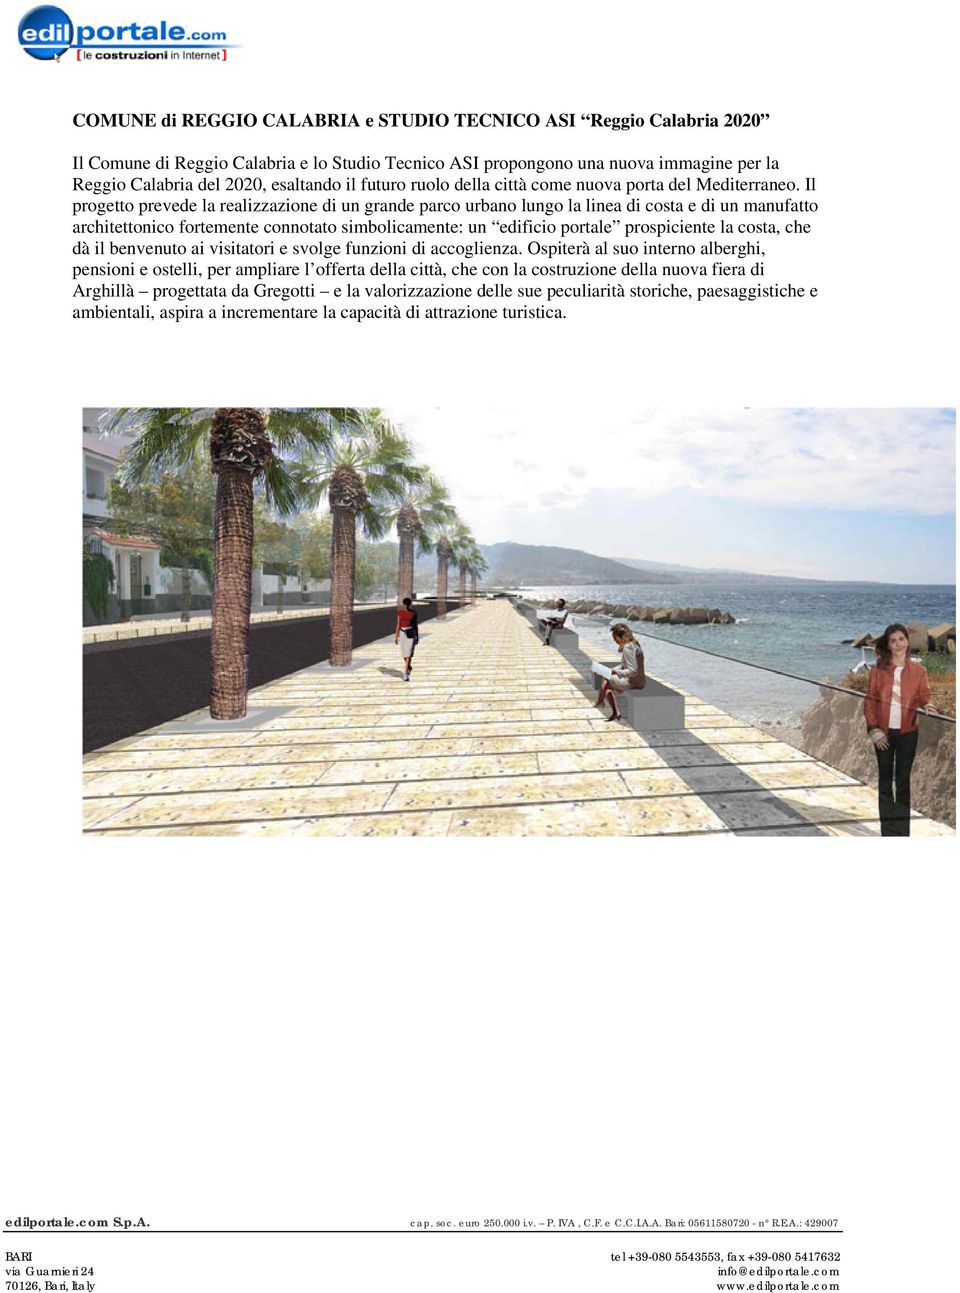 Il progetto prevede la realizzazione di un grande parco urbano lungo la linea di costa e di un manufatto architettonico fortemente connotato simbolicamente: un edificio portale prospiciente la costa,